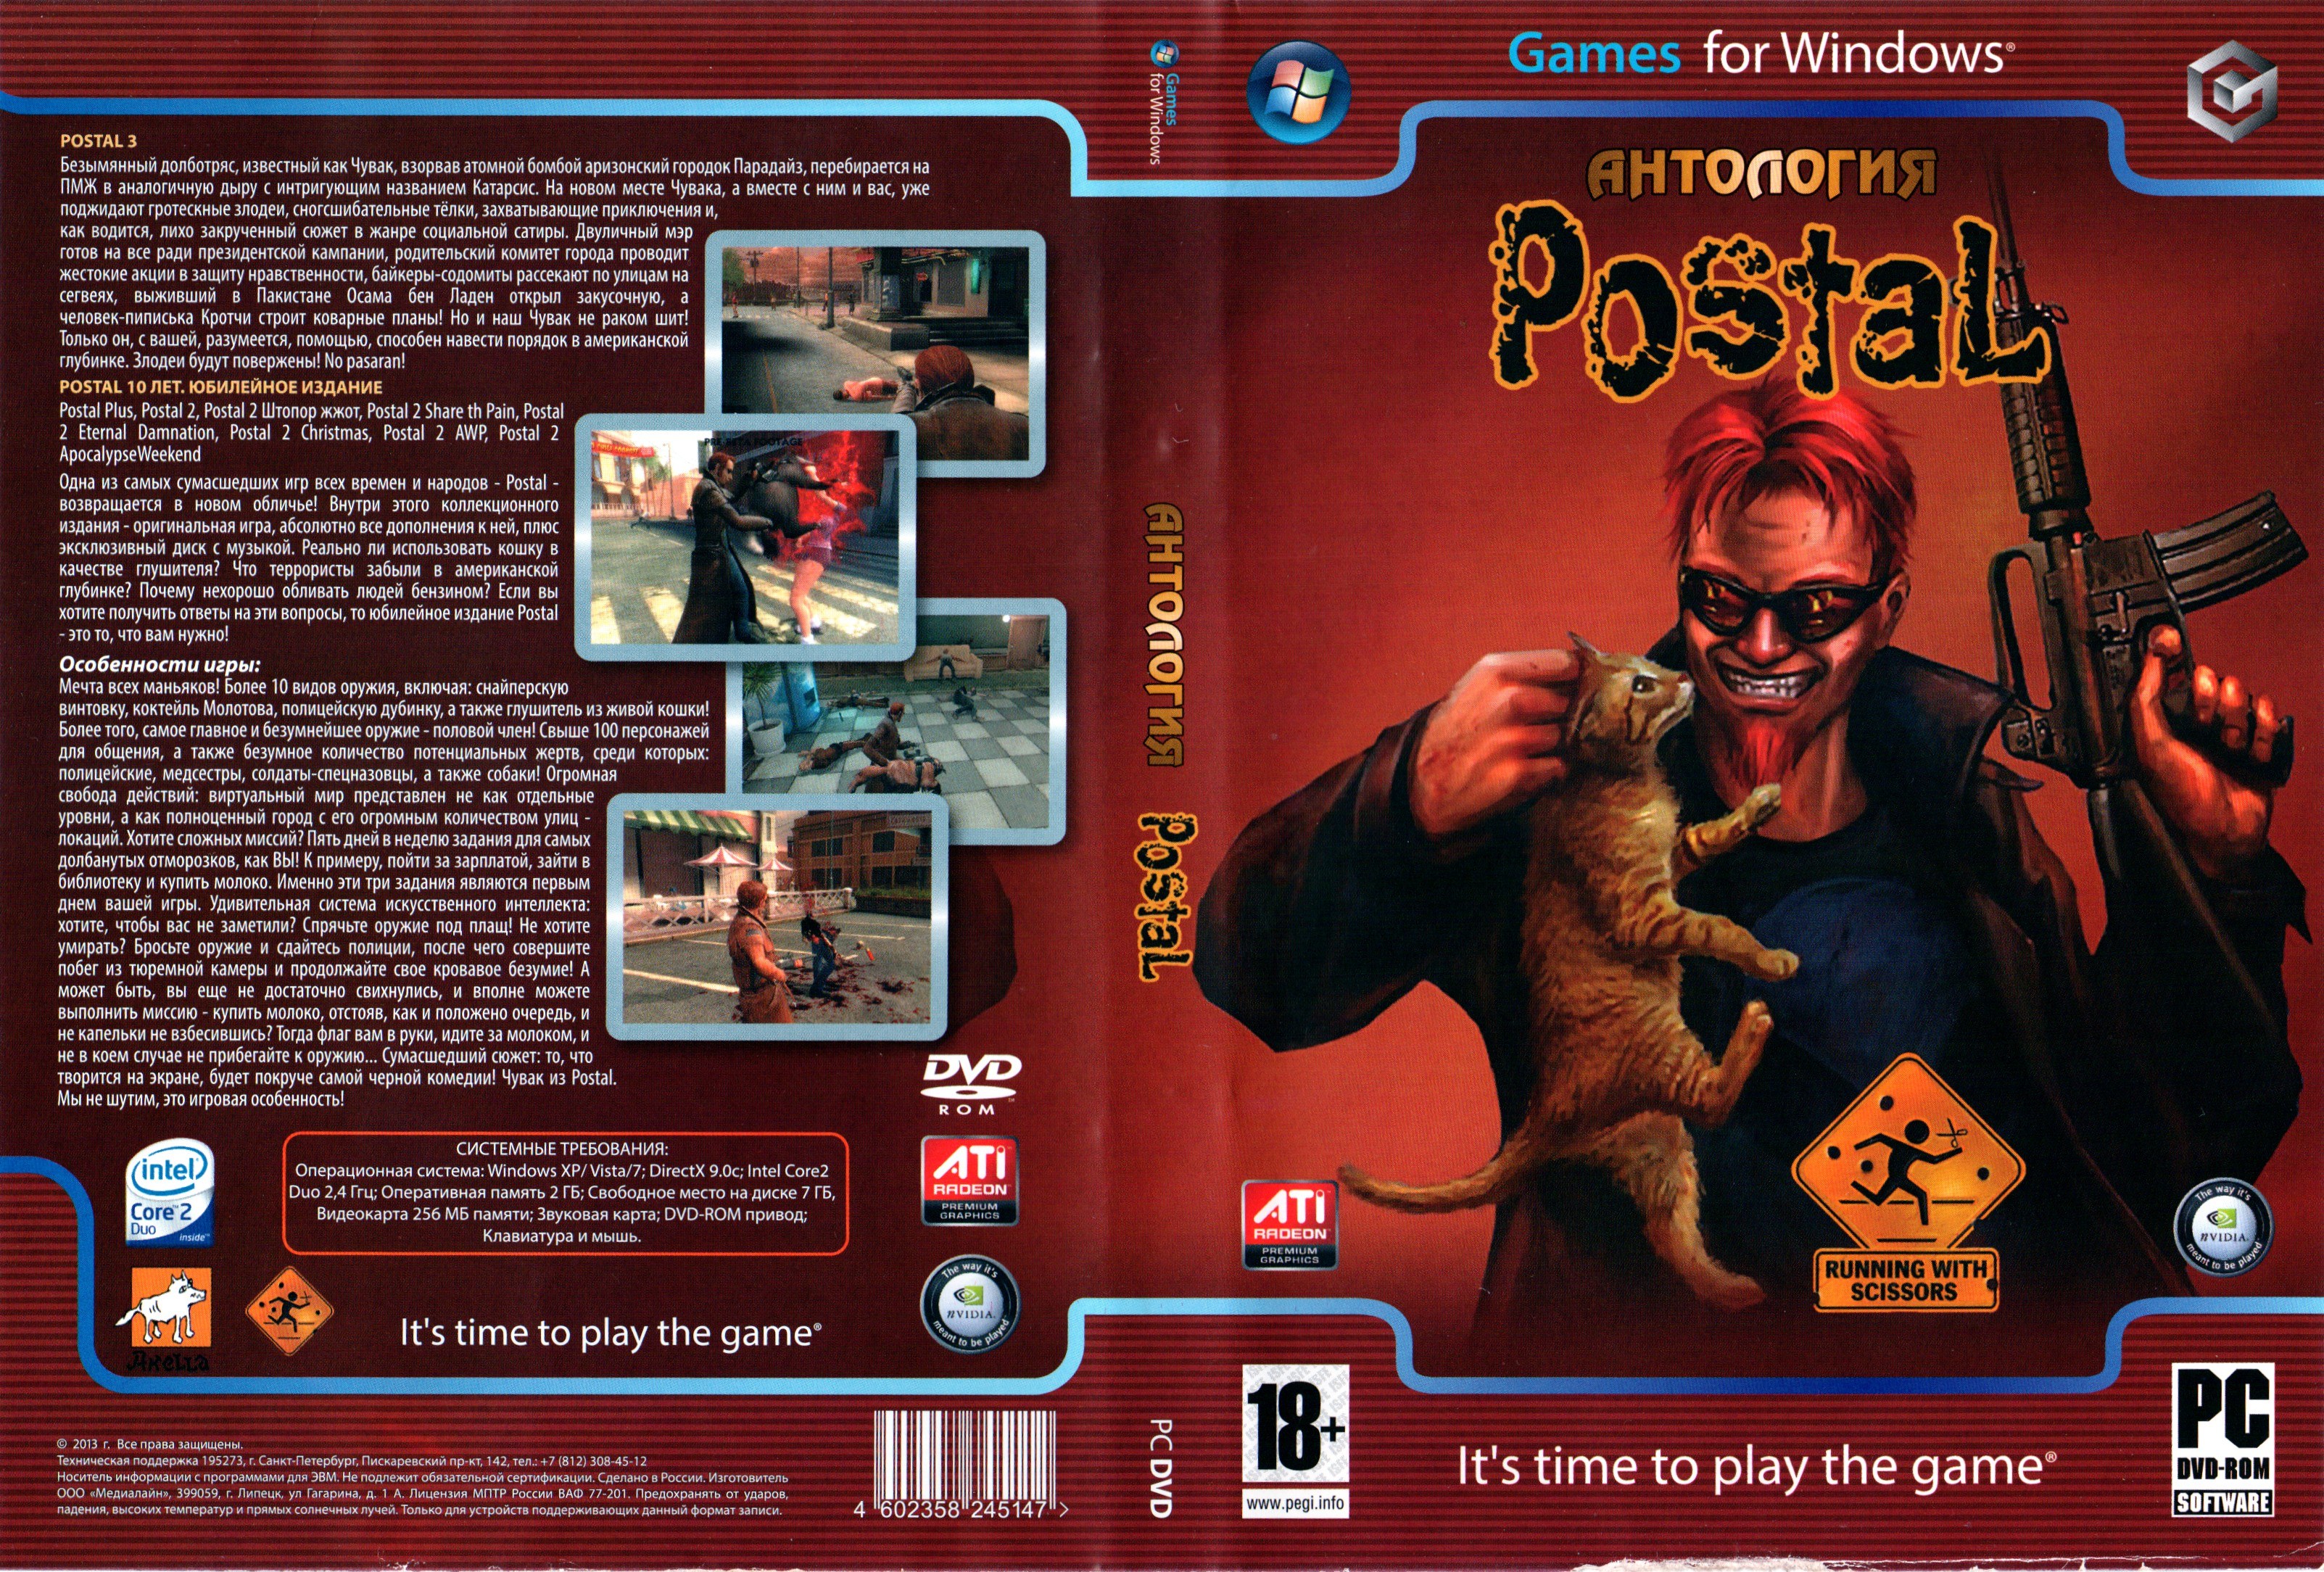 Антология человека. Postal 3 ПК диск. Postal 2 обложка игры. Постал 2 диск. Postal 3 обложка DVD.